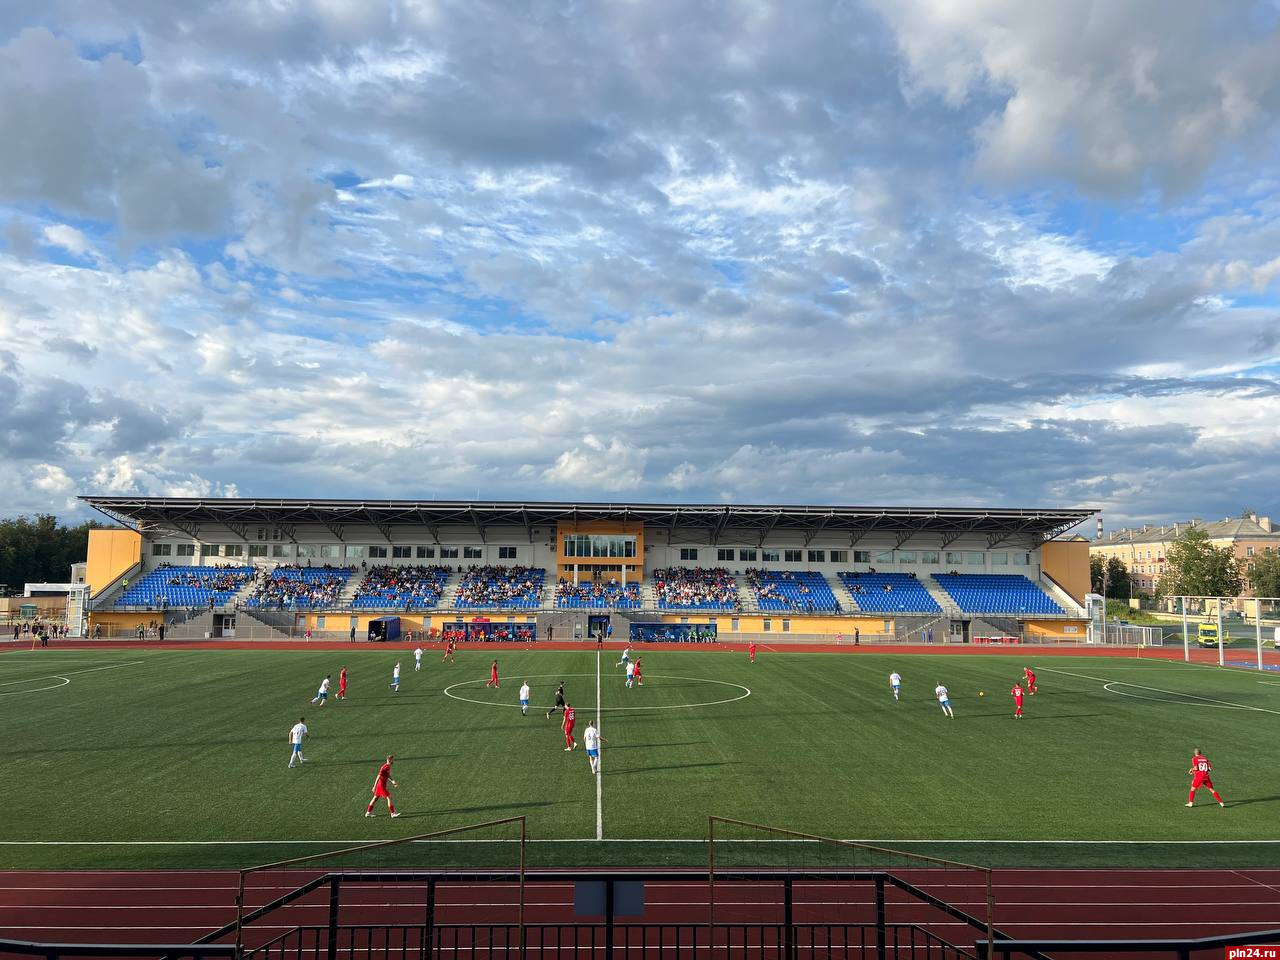 Сражение за  право право бороться за Кубок России России по футболу началось на стадионе Машиностроитель в Пскове